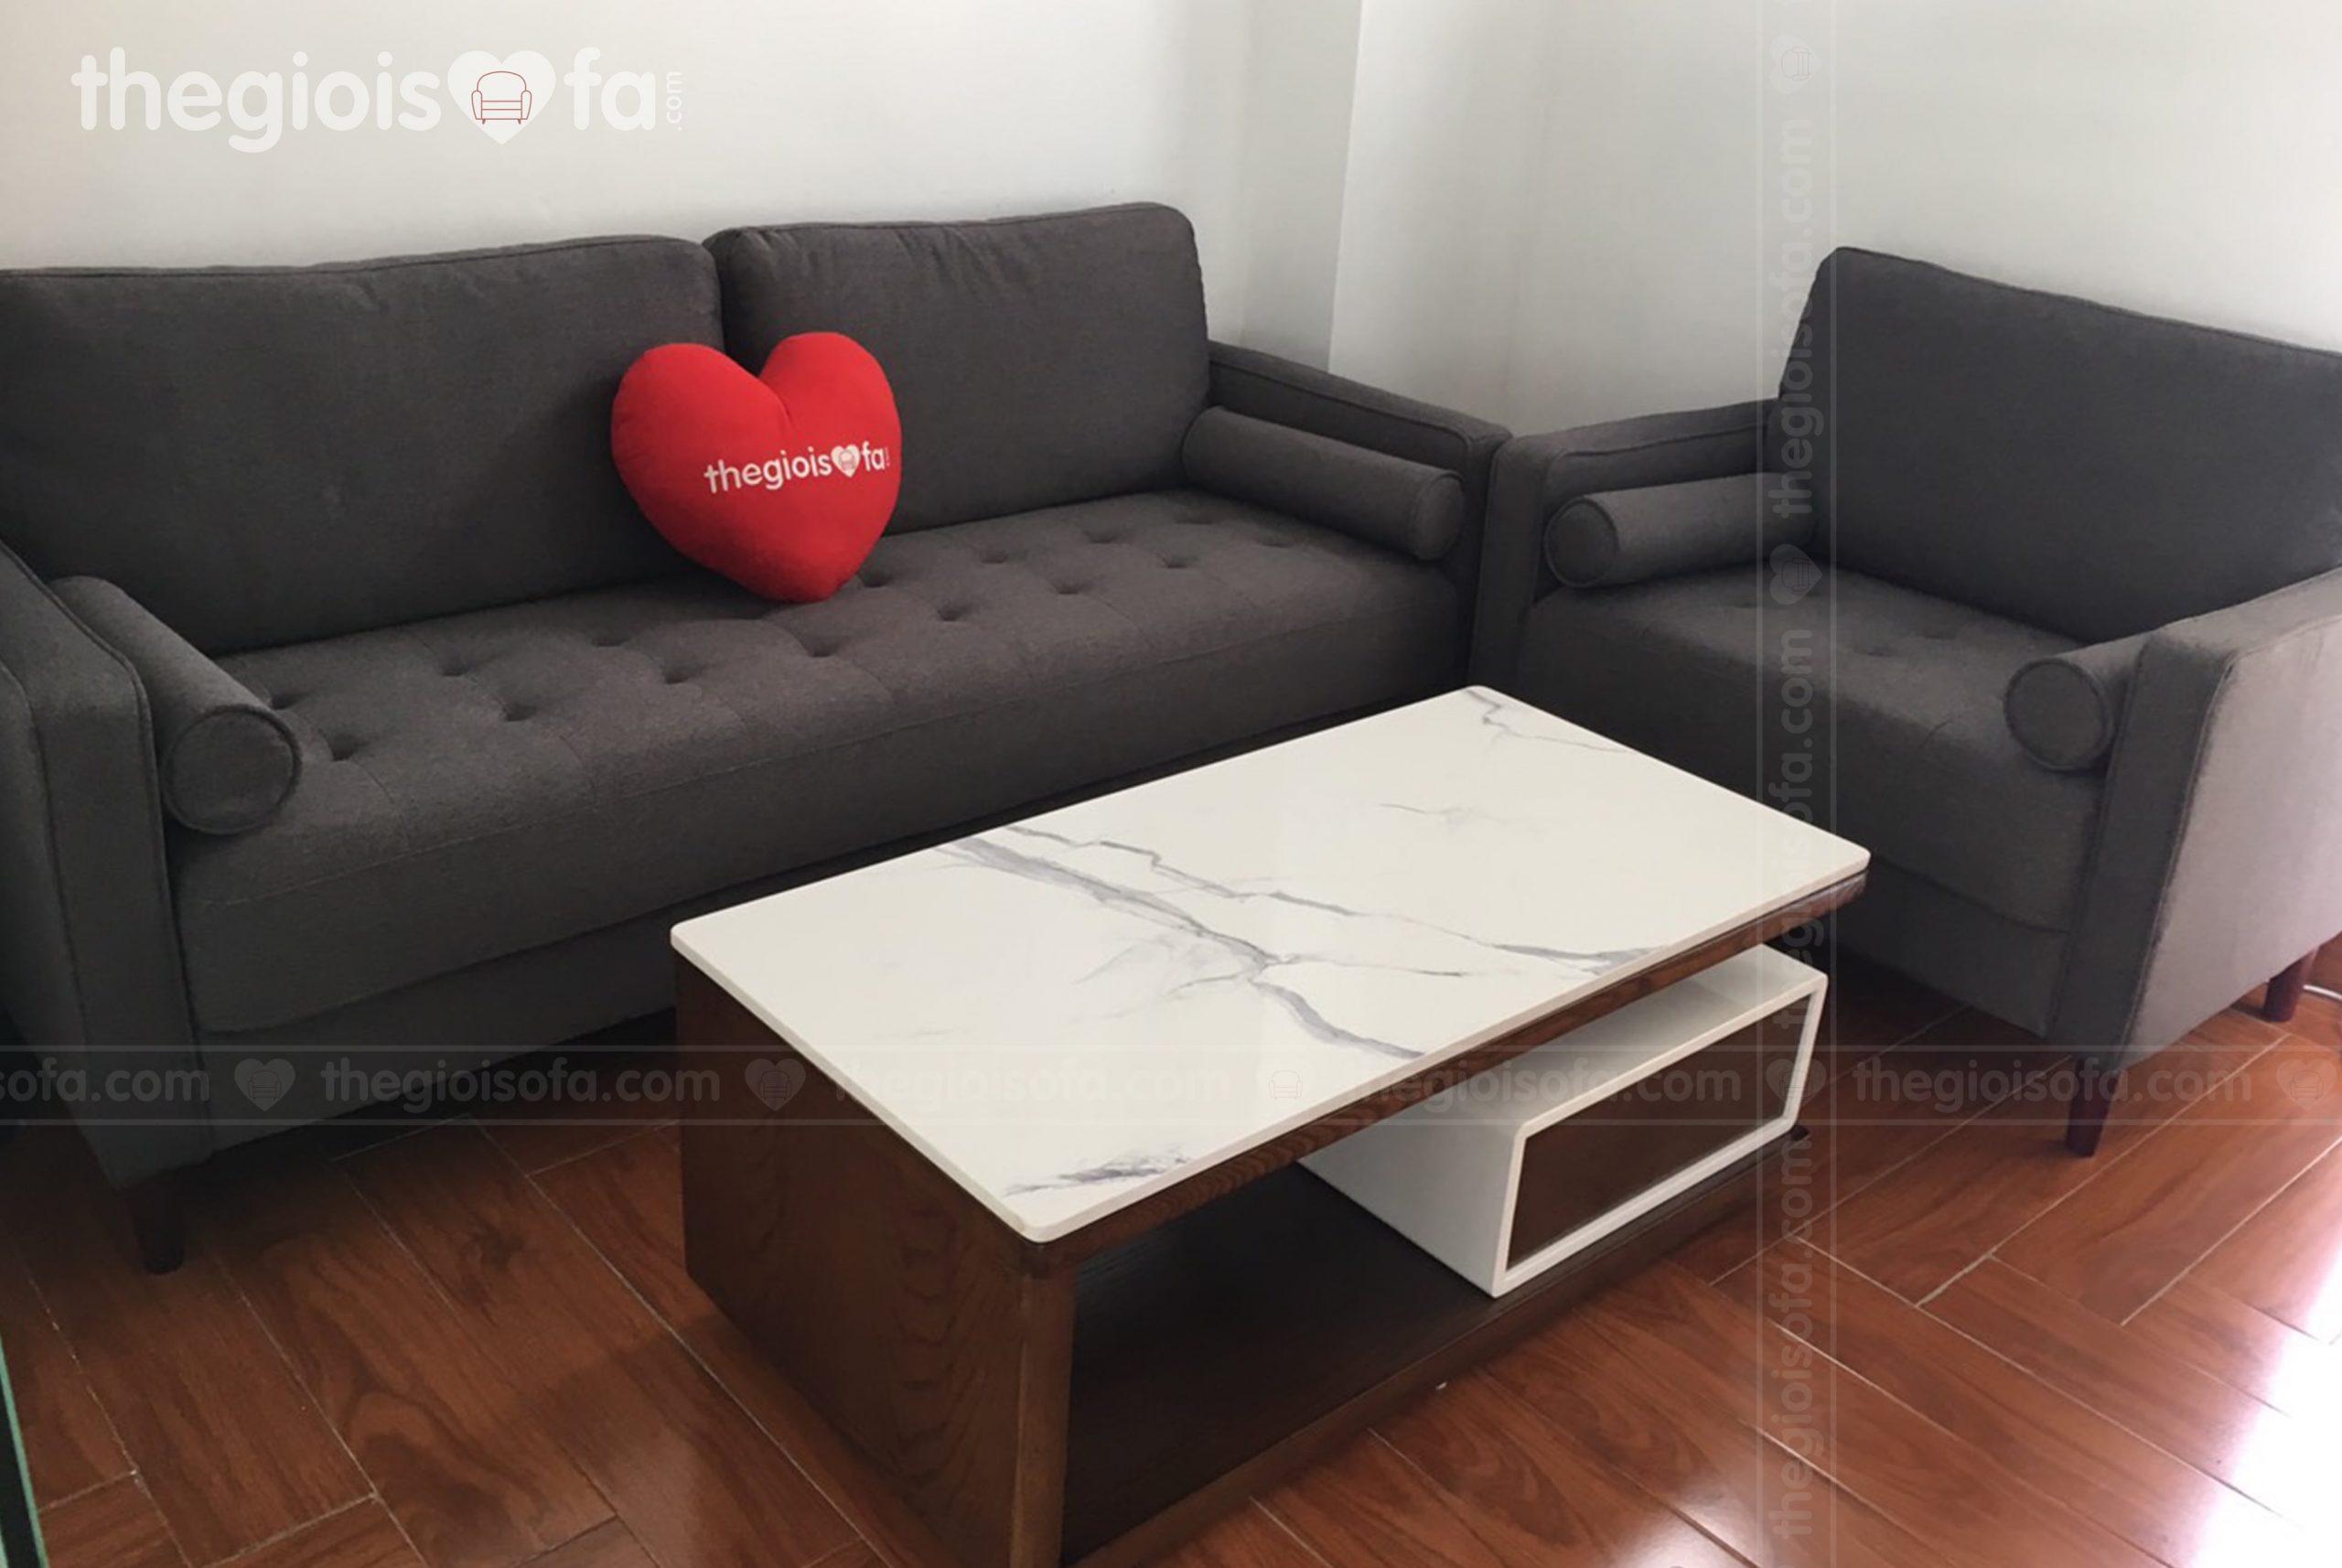 Tư vấn chọn mua sofa theo diện tích căn hộ chung cư